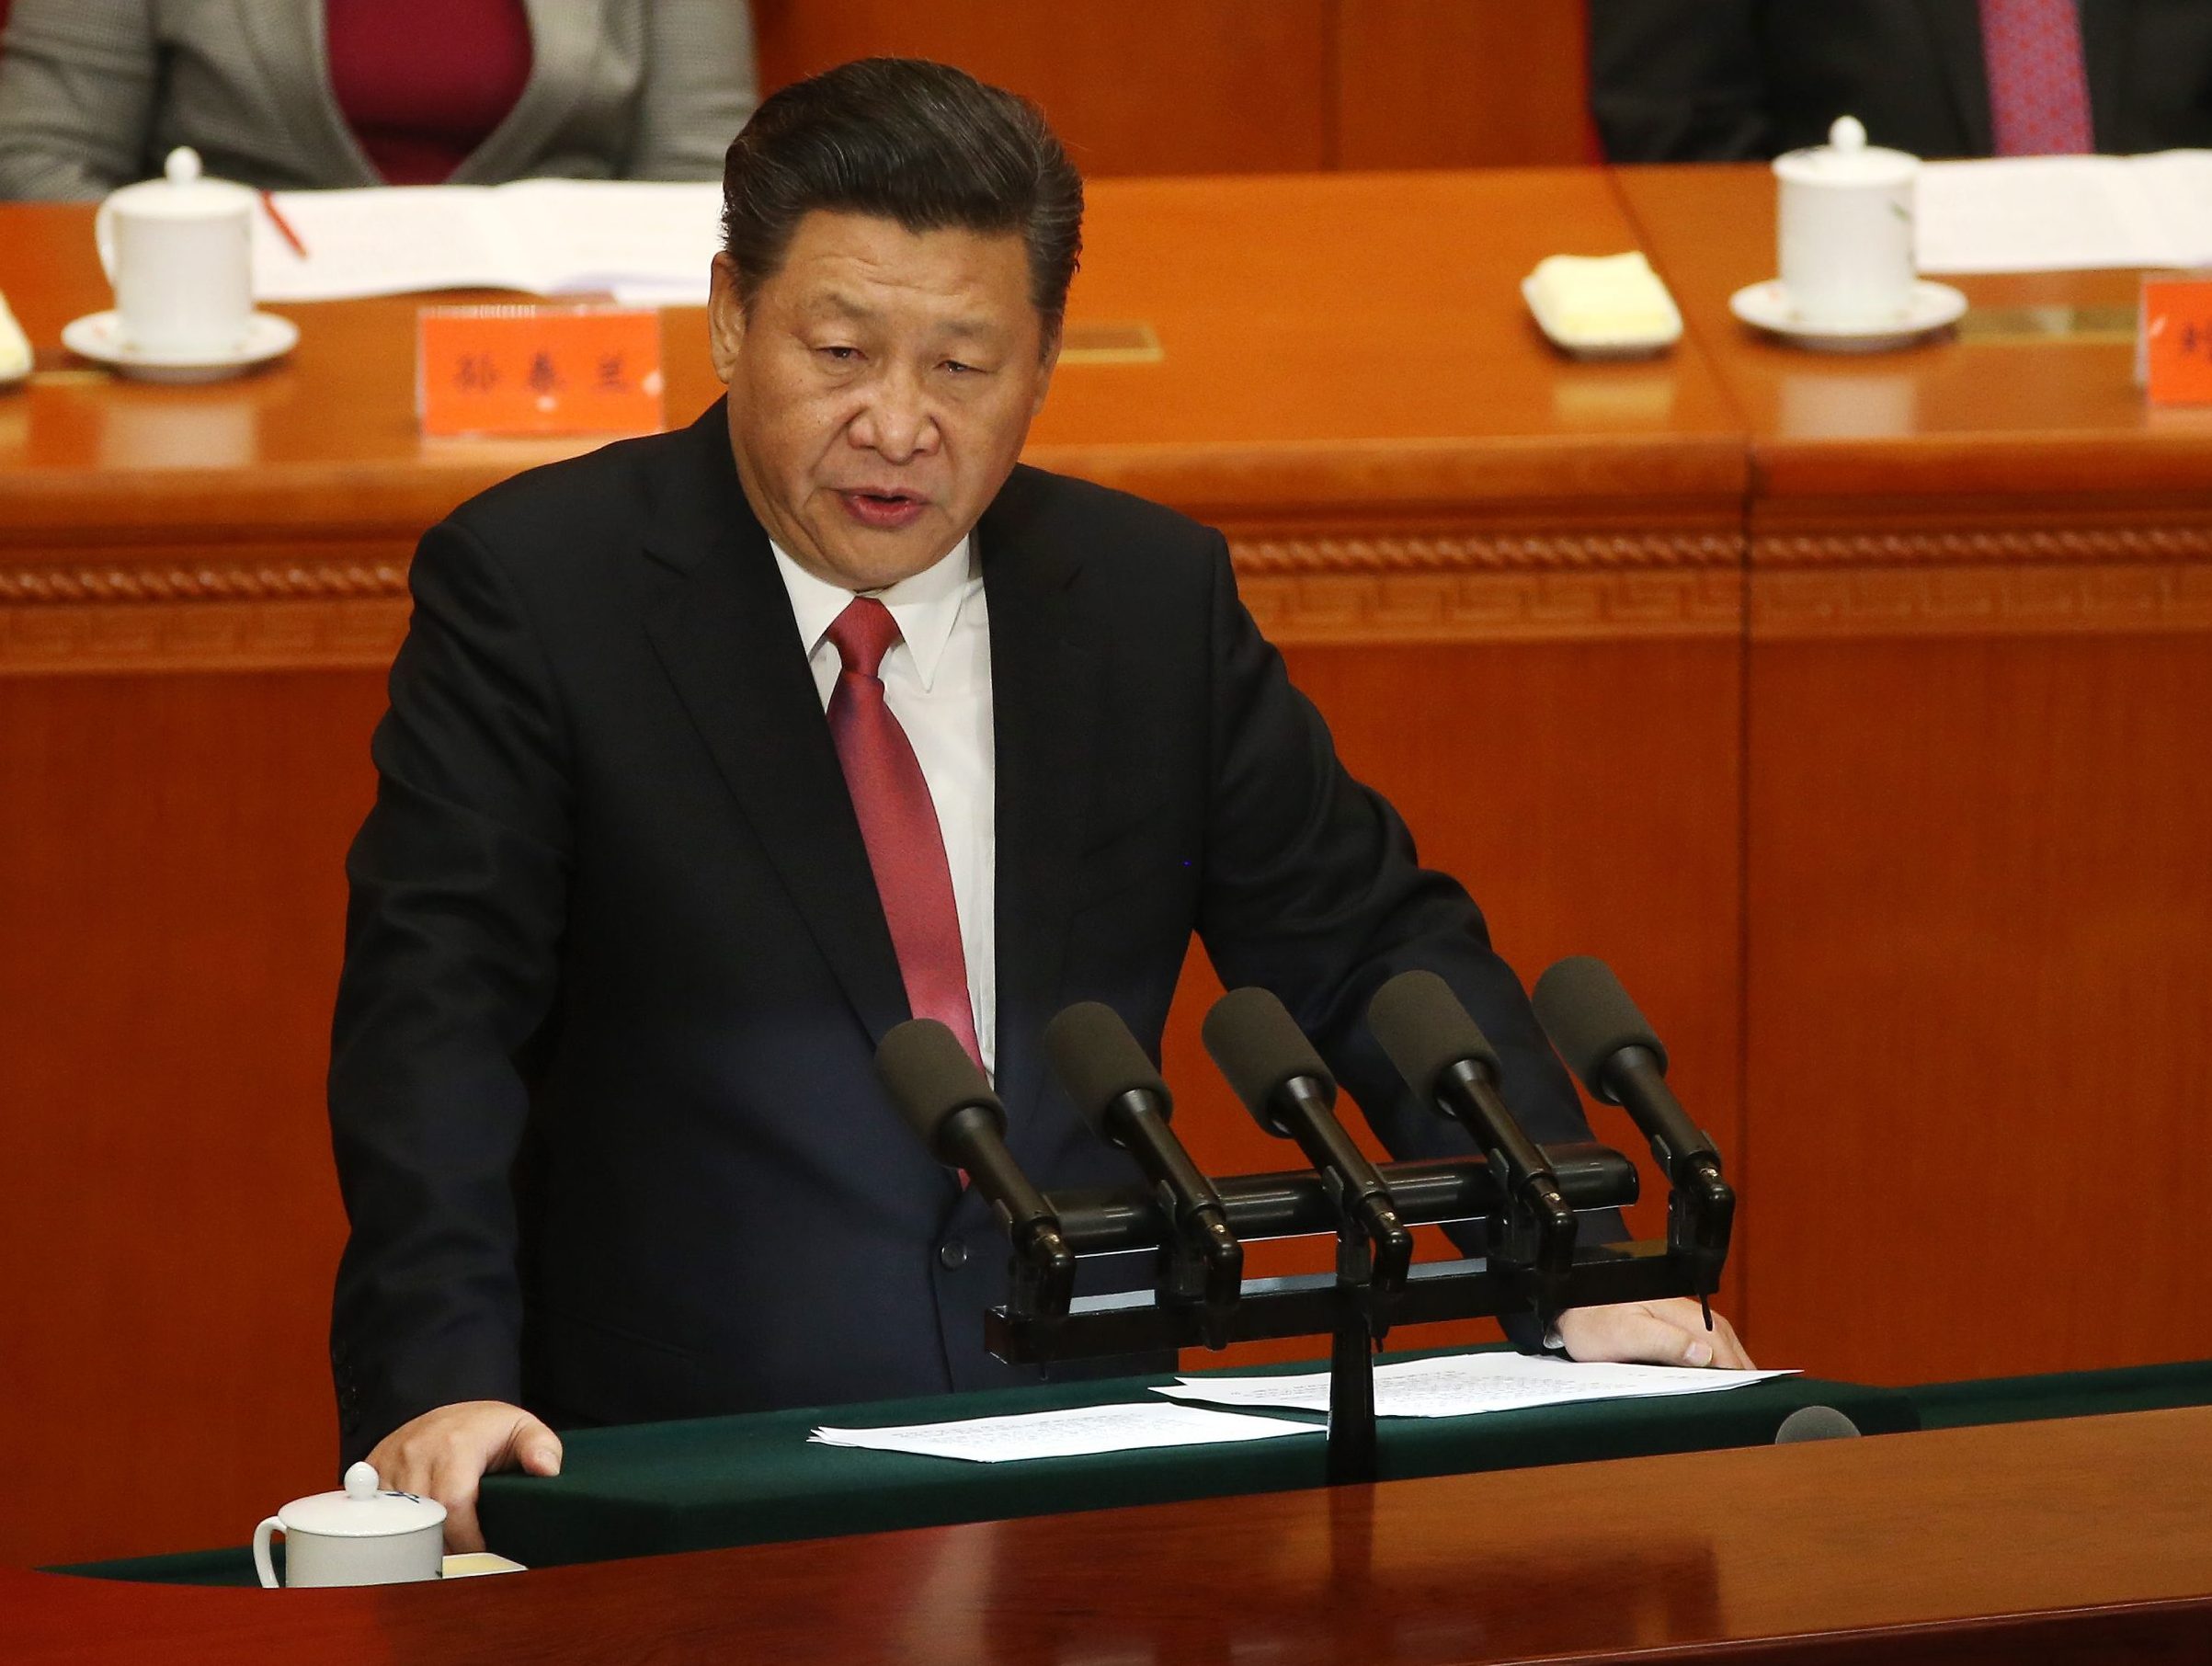 De Chinese president Xi Jinping deed maandag een handreiking naar de aanstaande president van de Verenigde Staten, Donald Trump. Samenwerking tussen China en de Verenigde Staten is de enige goede keuze wat betreft de relaties tussen de twee grootste economieën in de wereld, was de boodschap die Xi Jinping overbracht aan Trump.